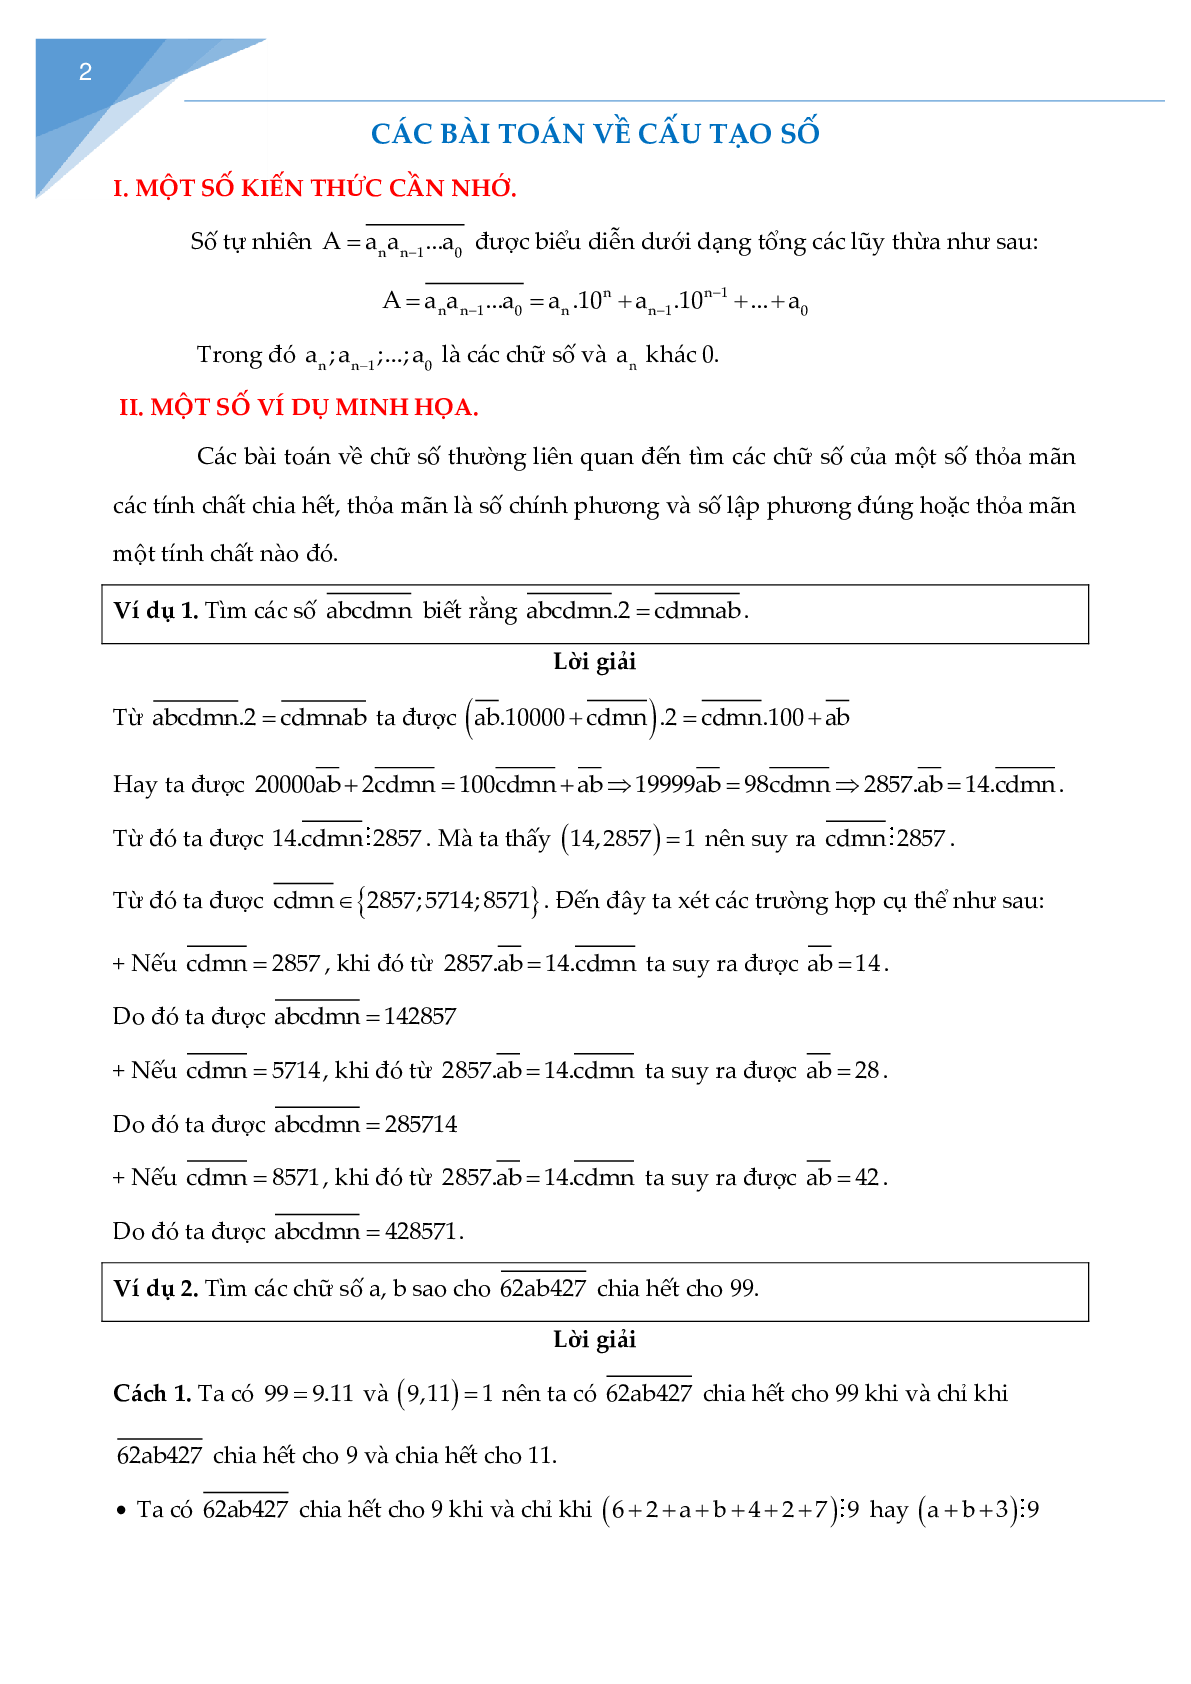 Các bài toán về cấu tạo số chọn lọc (trang 2)